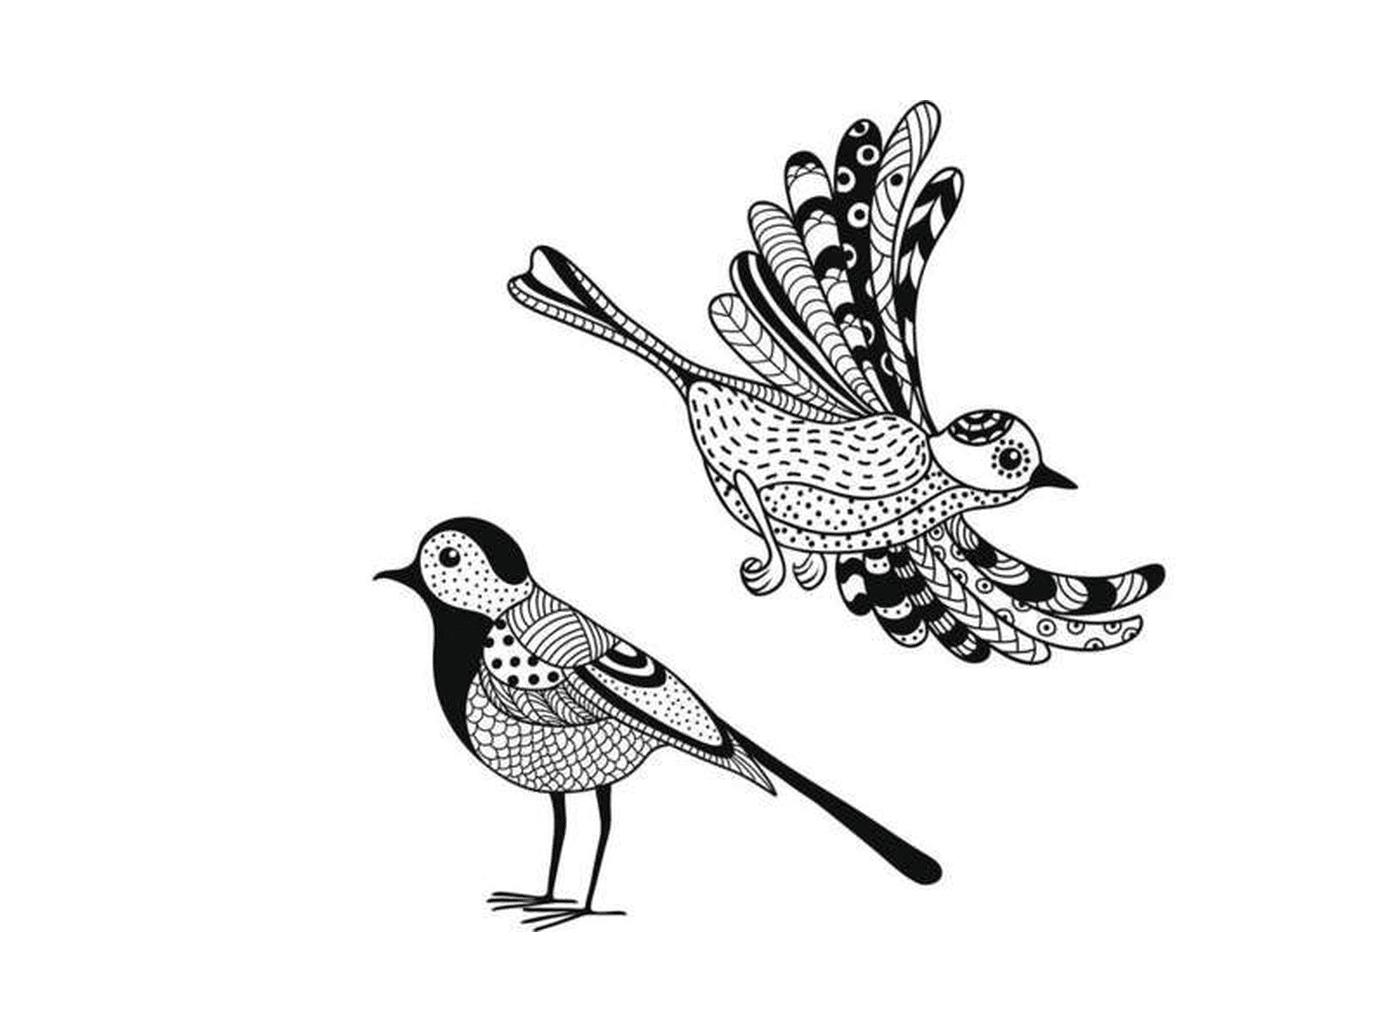  dos dibujos en blanco y negro de un pájaro 